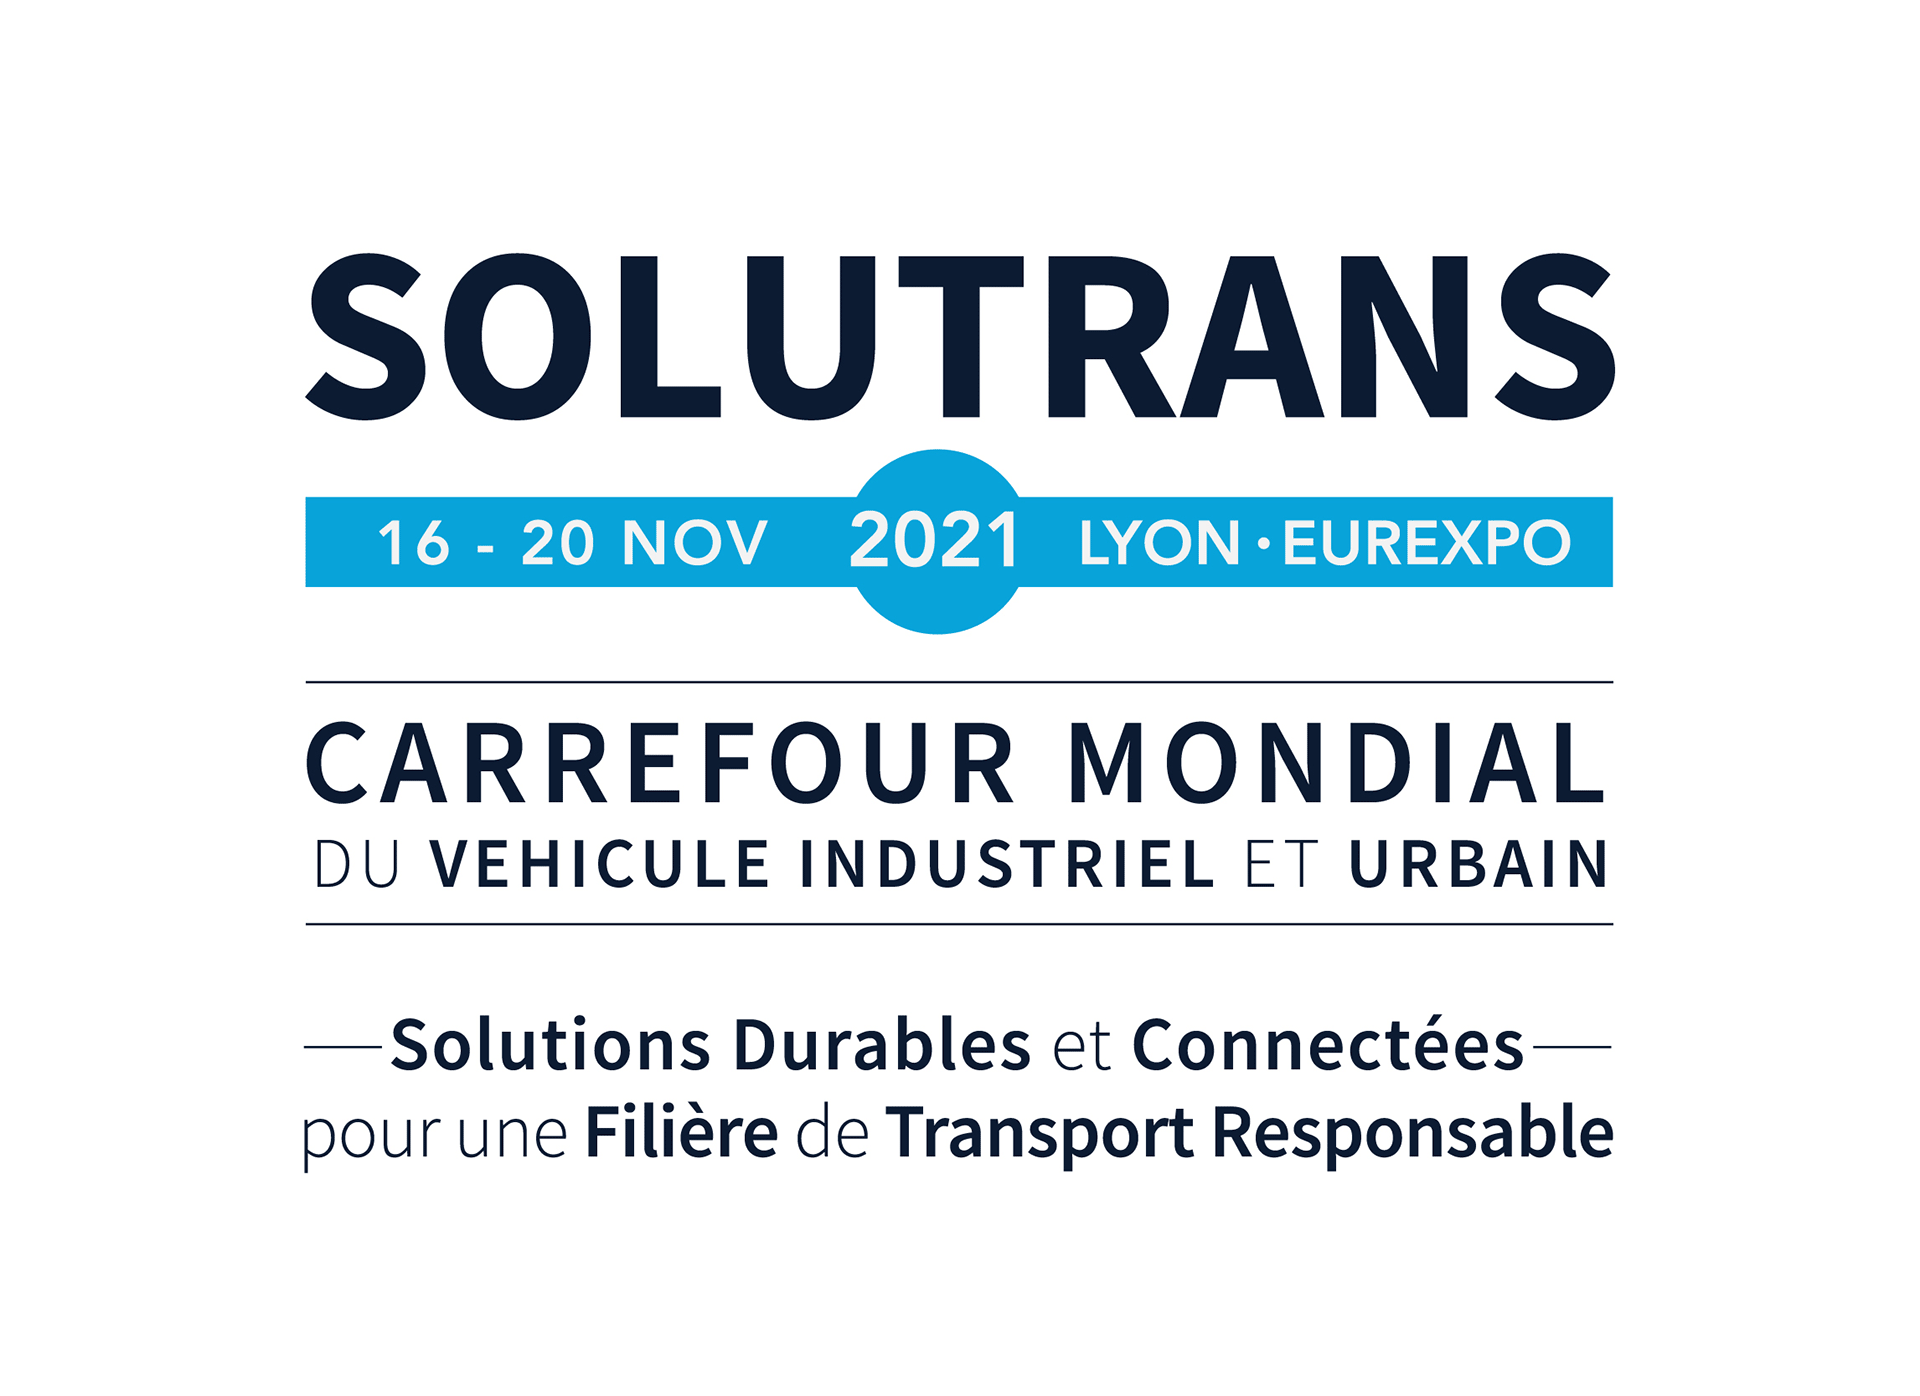 Solutrans, carrefour mondial du véhicule industriel et urbain, du 16 au 20 novembre 2021 à Lyon Eurexpo sur le thème "Des solutions durables et connectées pour une filière de transport responsable "